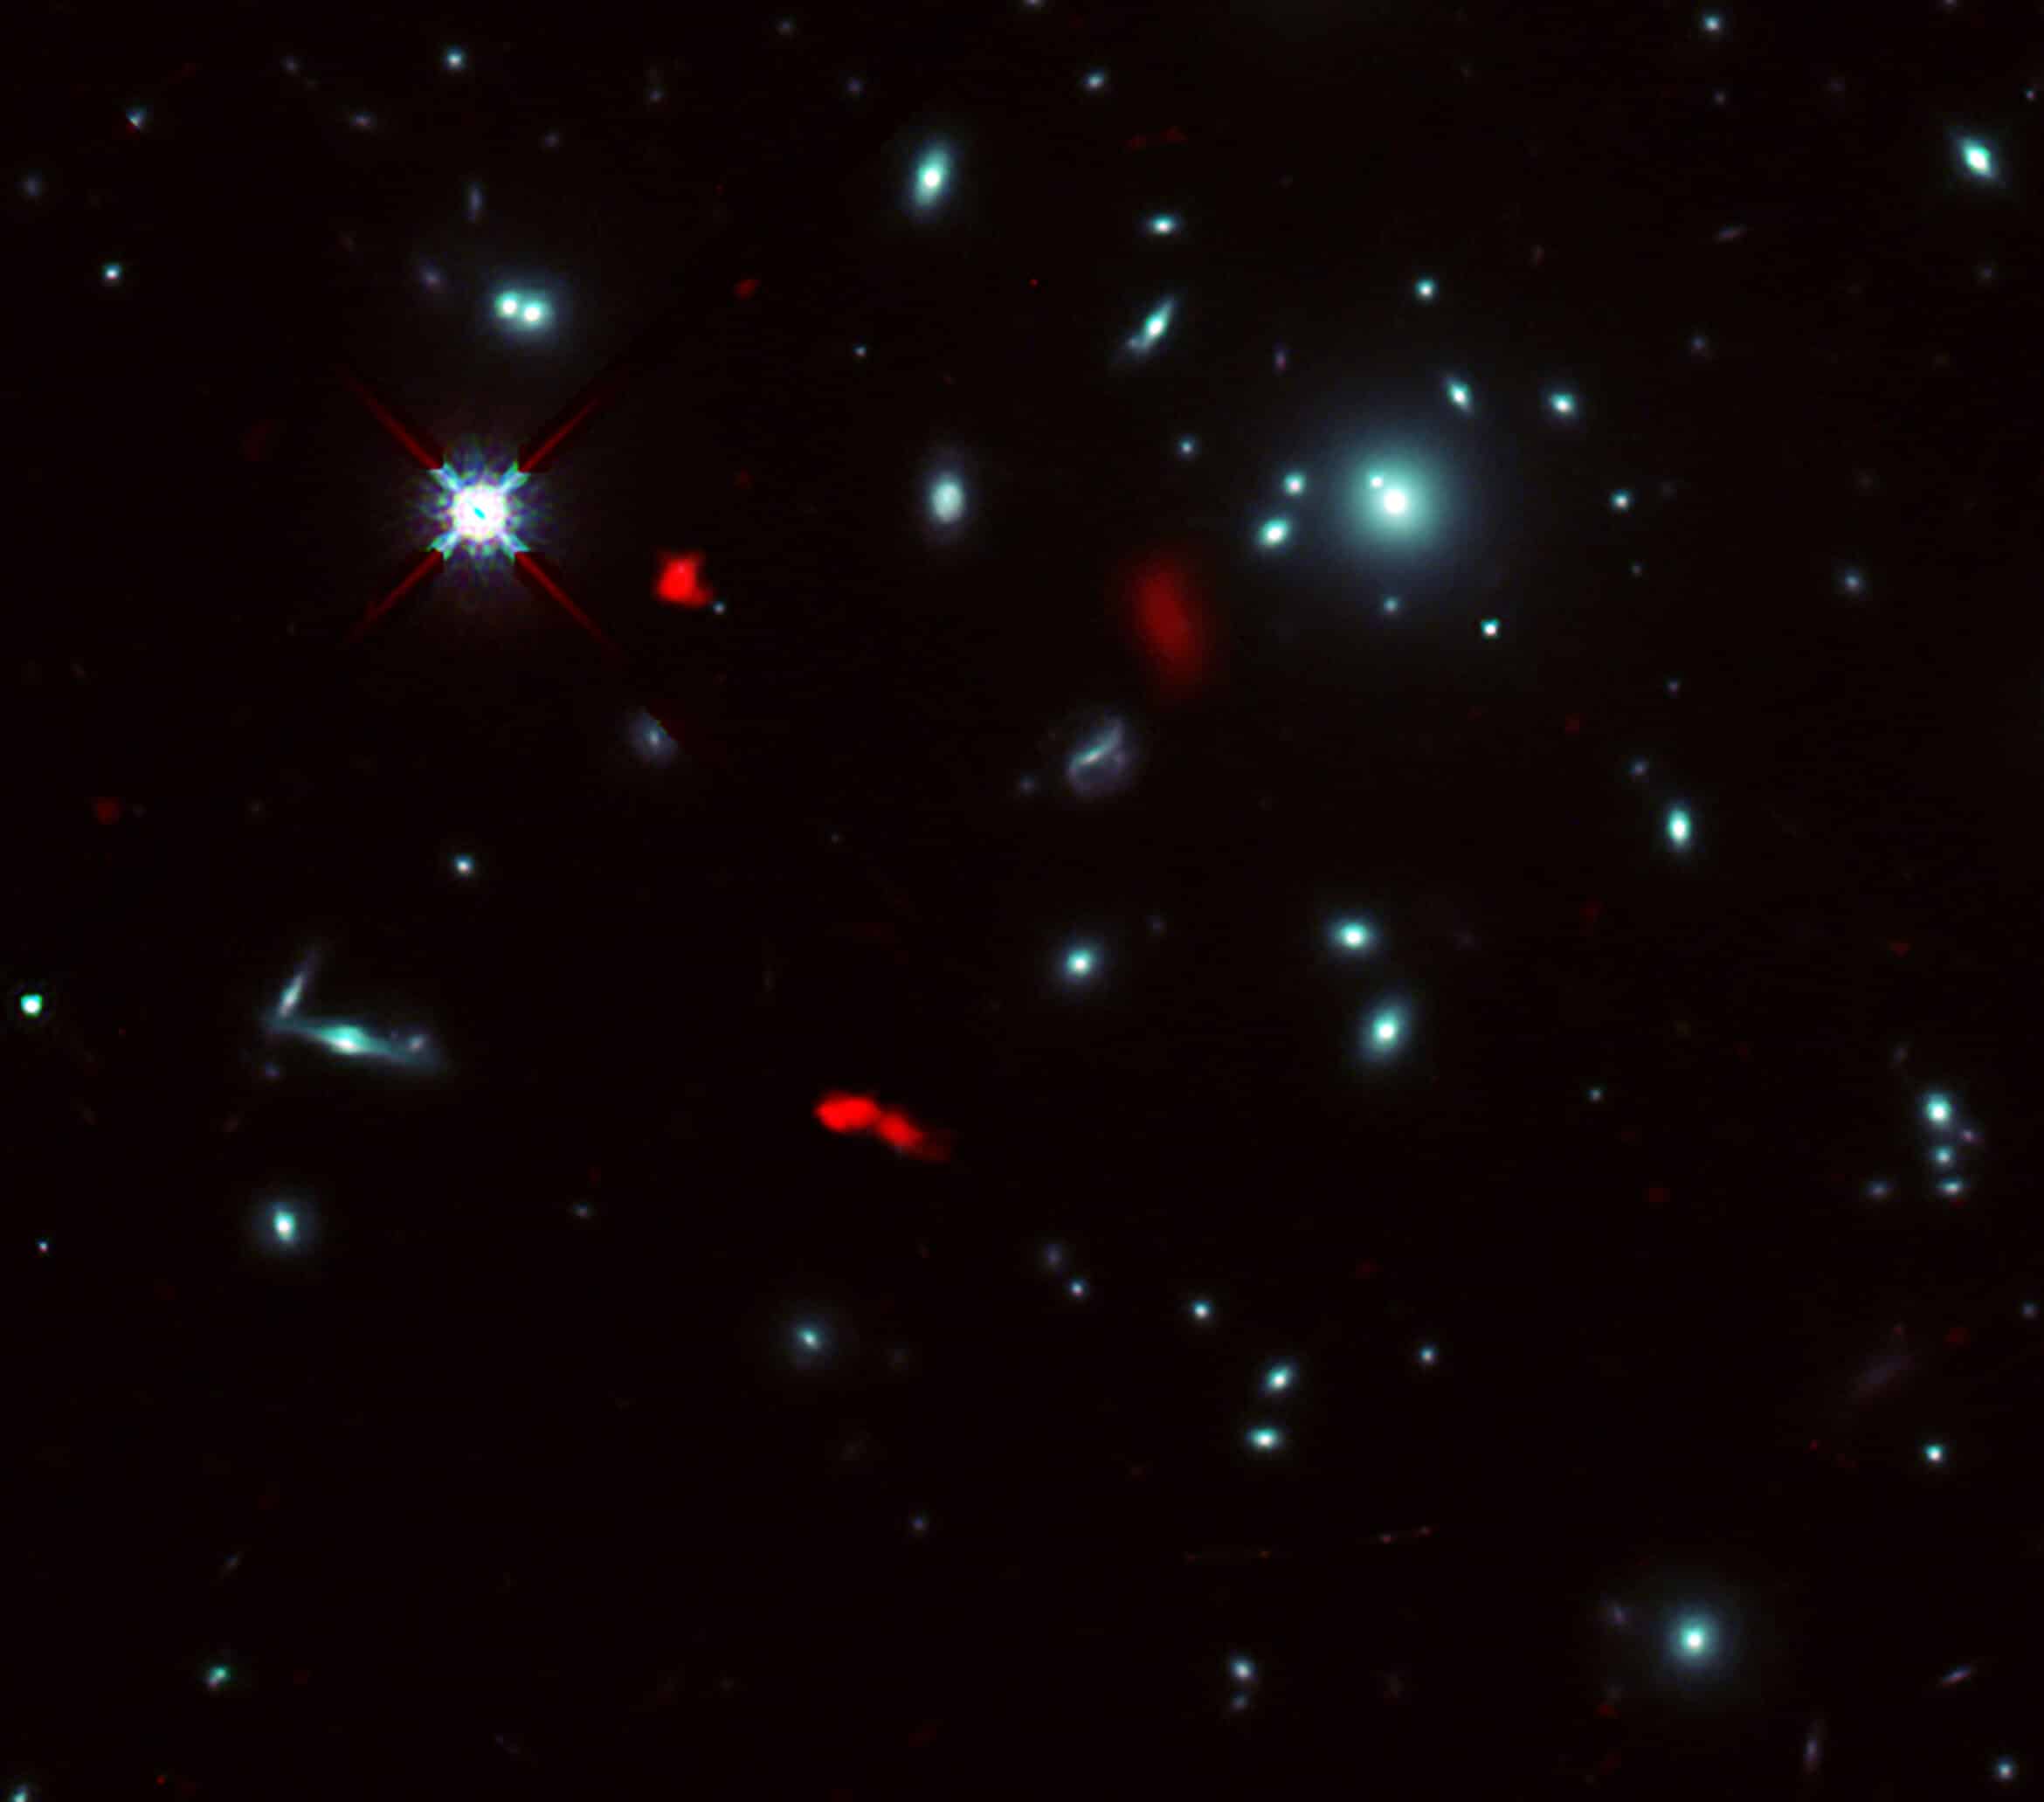 צביר הגלקסיות RXCJ0600-2007 שצולמה על ידי טלסקופ החלל האבל של נאס"א/ ESA, בשילוב עם תמונות עדשות כבידה של הגלקסיה הרחוקה RXCJ0600-z6, במרחק של 12.4 מיליארד שנות אור, שנצפו על ידי ALMA (מוצג באדום).    בשל אפקט העדשה הכבידתית של צביר הגלקסיות, התמונה של RXCJ0600-z6 התעצמה והוגדלה, ונראה כי חולקה לשלושה חלקים או יותר.  קרדיט: ALMA (ESO/NAOJ/NRAO), פוג'ימוטו ואח', טלסקופ החלל נאס"א/ESA האבל